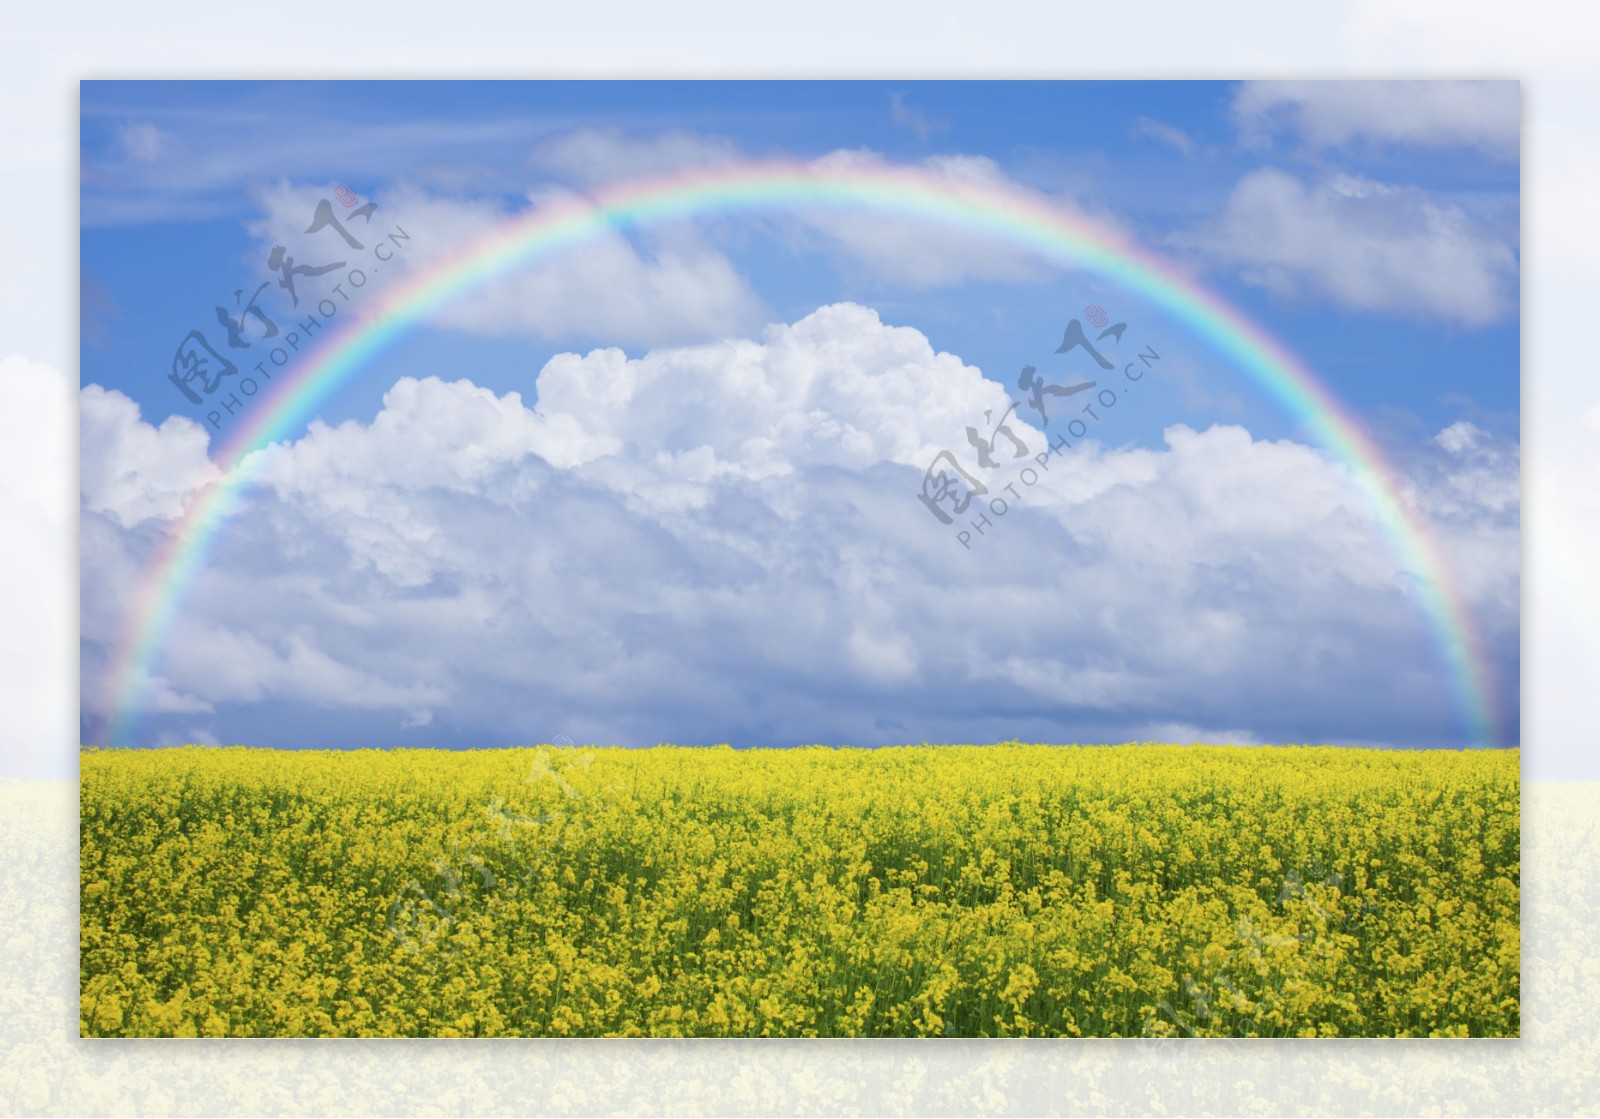 油菜田上面的美丽彩虹图片